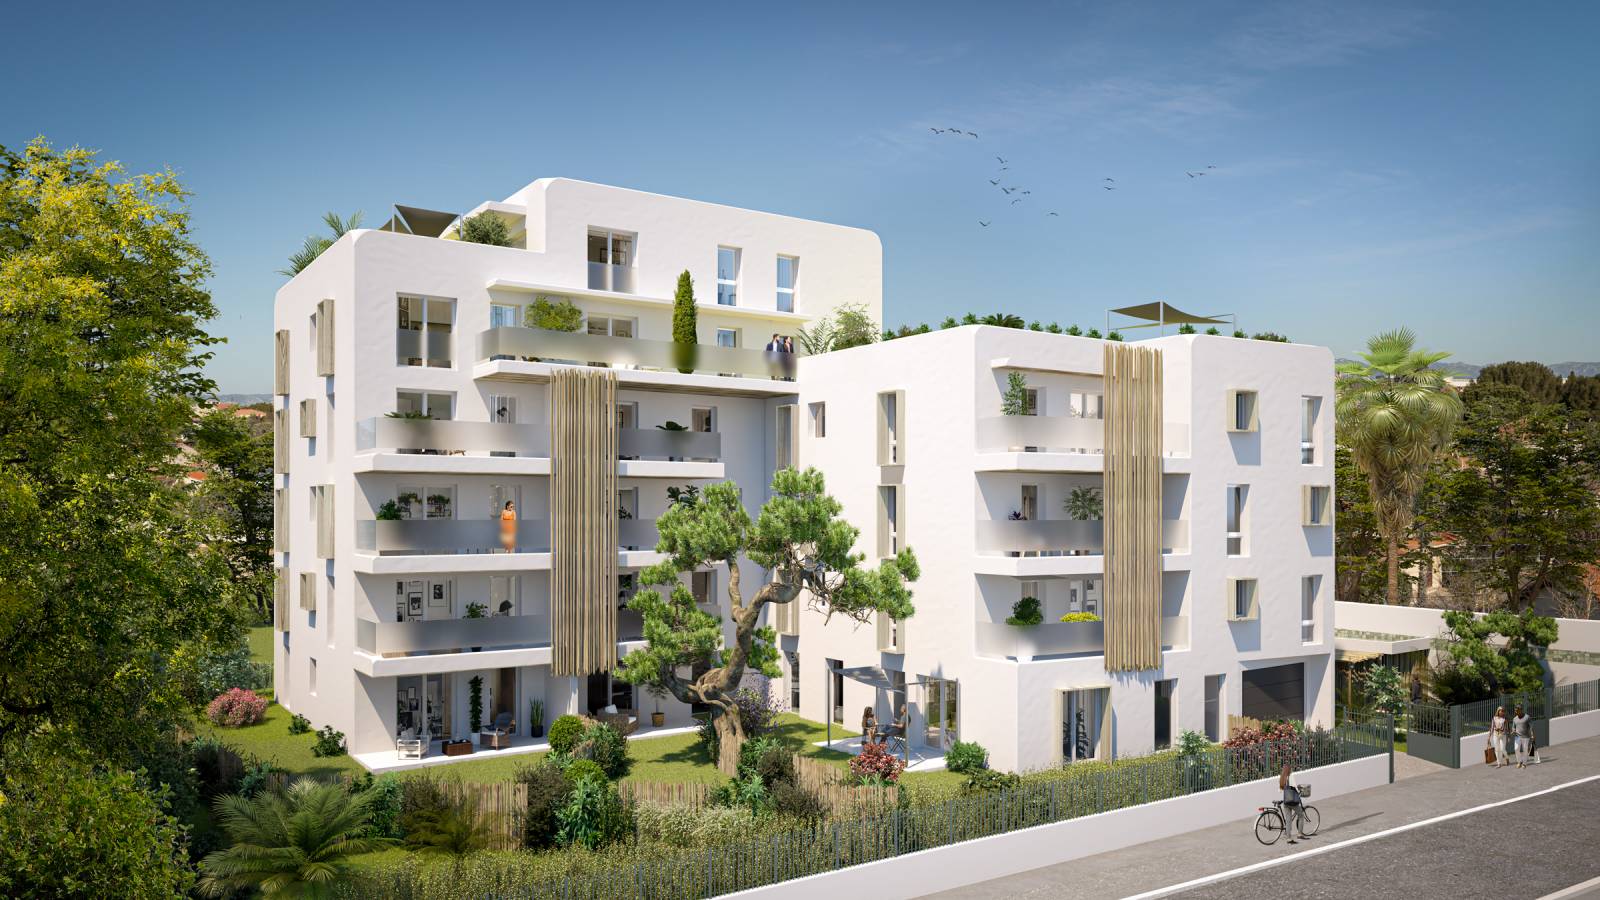 Programme immobilier neuf CASA BOHA du T2 au T5 à Marseille 13008 quartier Vieille Chapelle